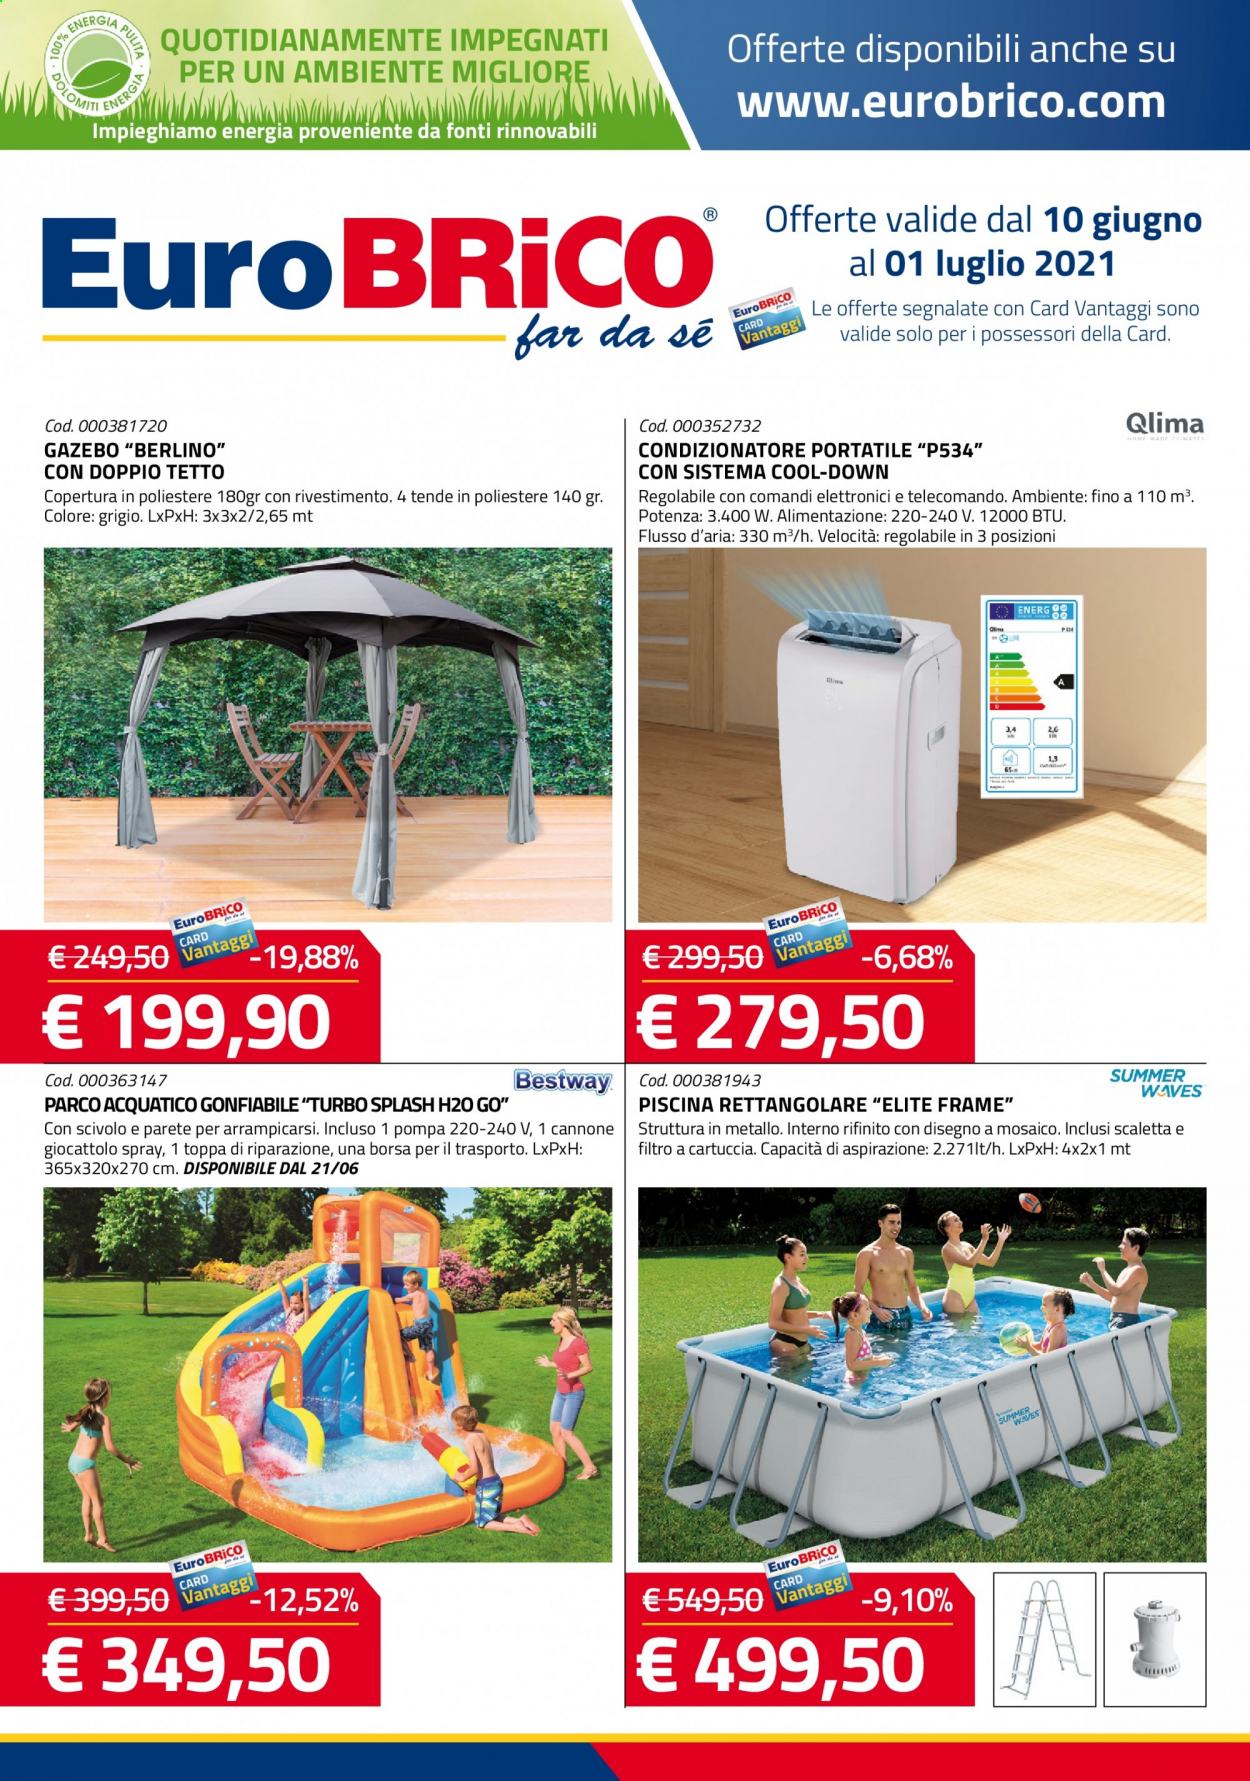 thumbnail - Volantino Eurobrico - 10/6/2021 - 1/7/2021 - Prodotti in offerta - condizionatore, condizionatore portatile, pompa, scaletta, borsa, gazebo, parco acquatico, piscina. Pagina 1.